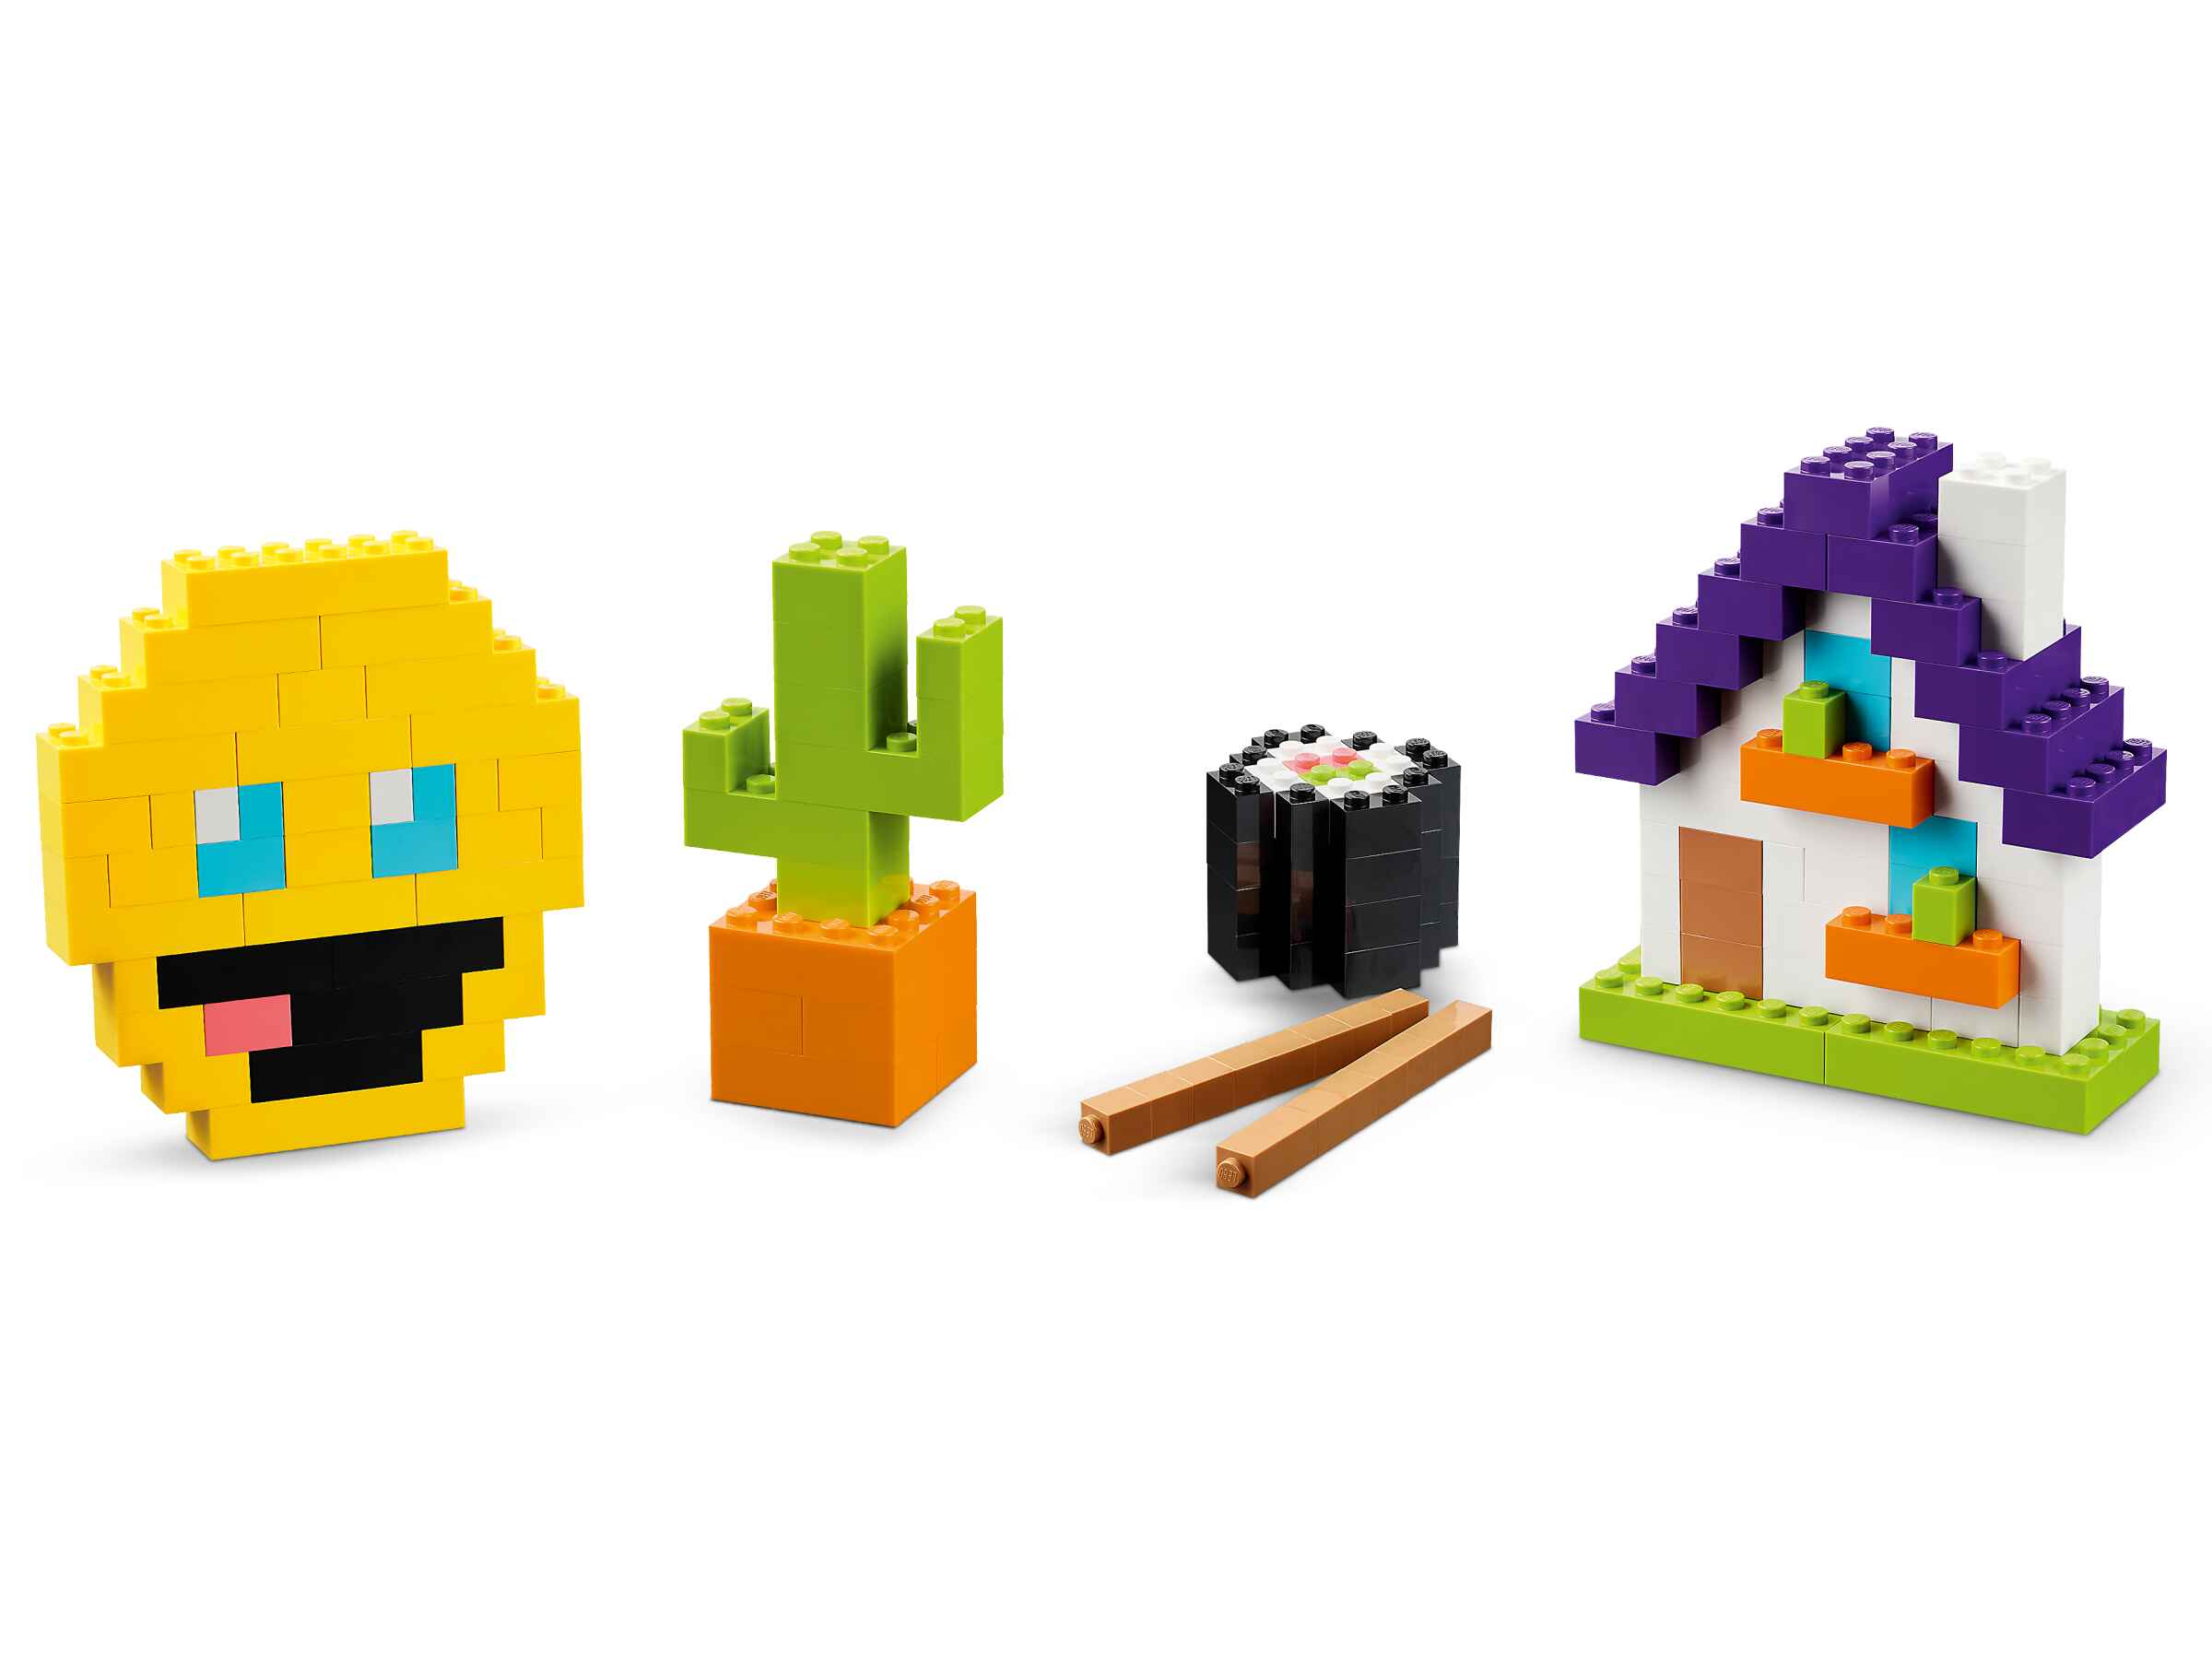 LEGO 11030 Classic Großes Kreativ-Bauset, 1.000 Steine in 10 leuchtenden Farben